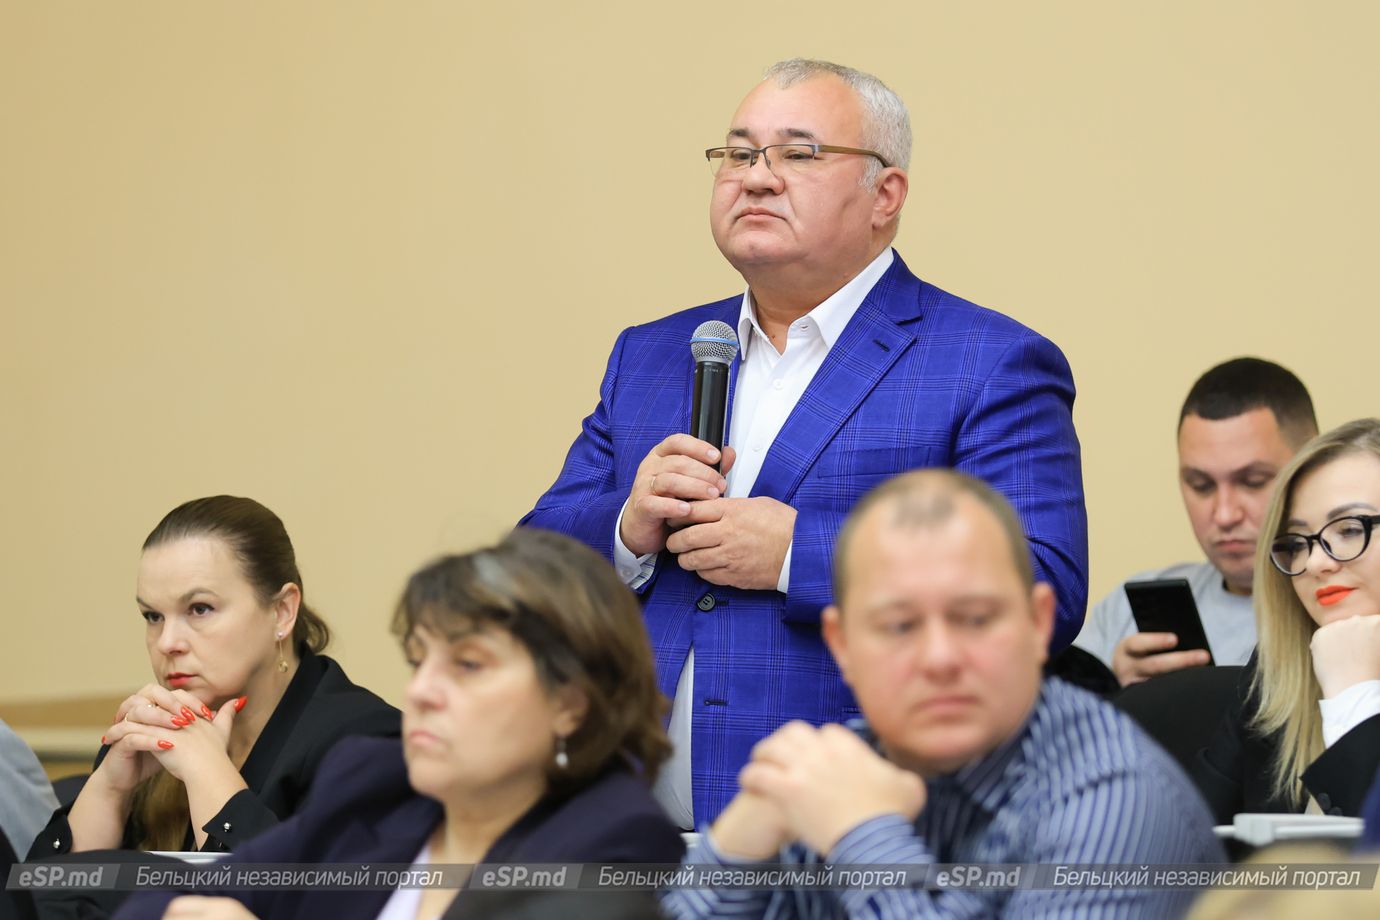 муниципальный советник Николай Григоришин поинтересовался, что будет с сотрудниками бельцкого Управления соцобеспечения, которые рискуют остаться без работы.